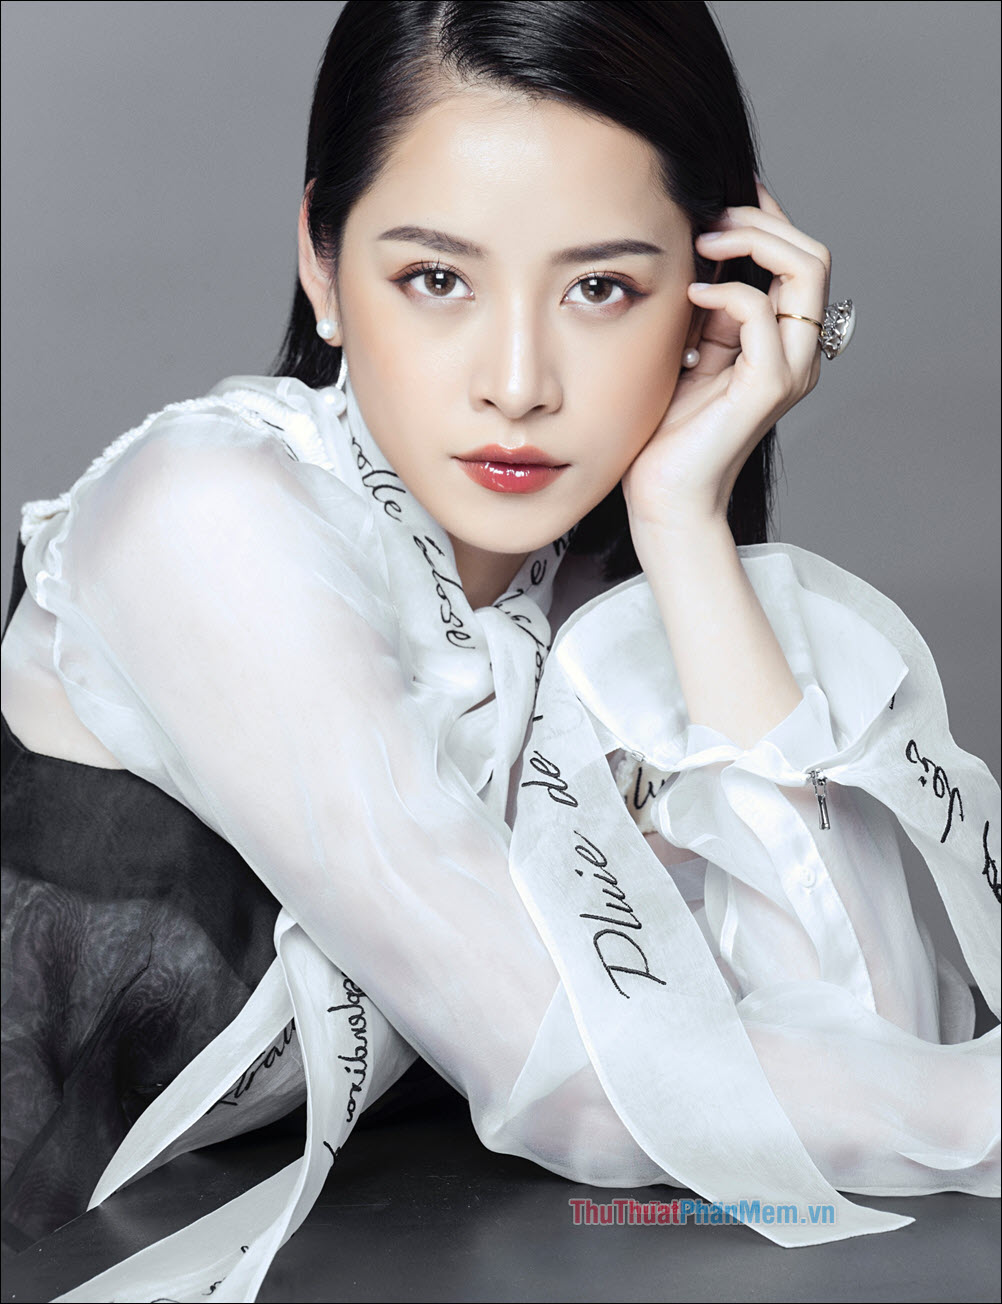 Top 20 nữ diễn viên đẹp nhất Việt Nam hiện nay